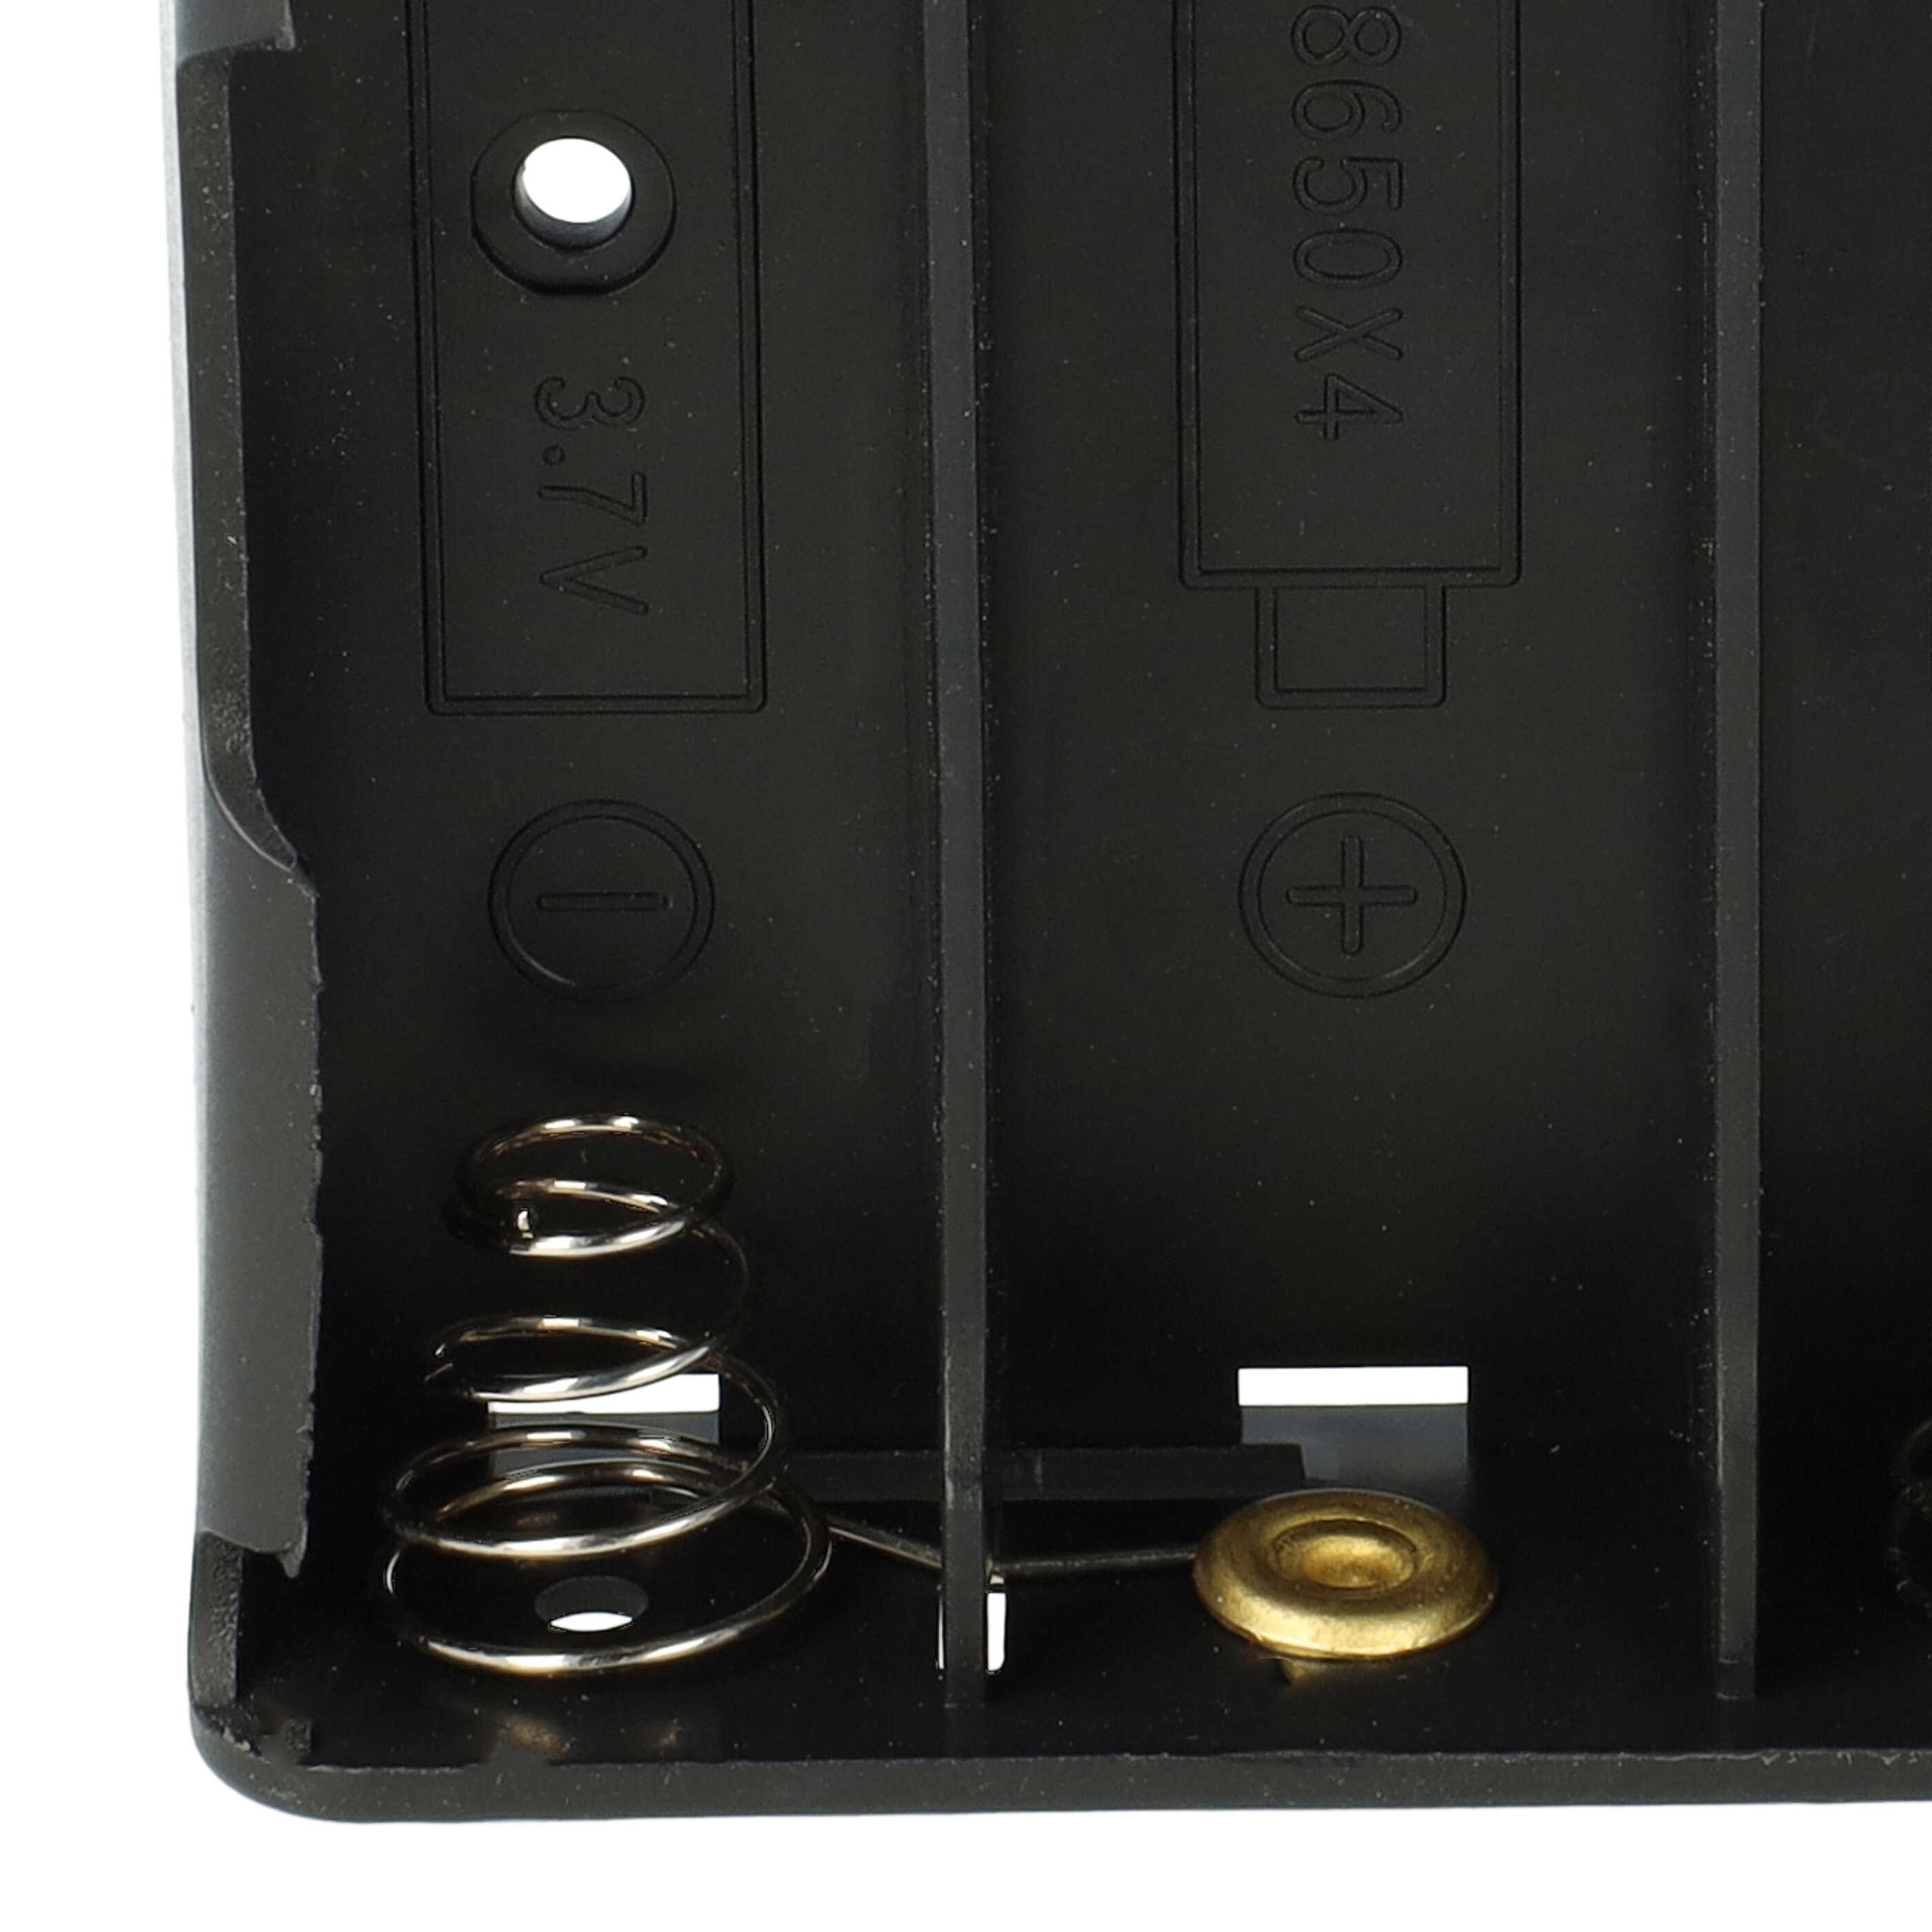 Soporte baterías para 4 celdas 1850 - Soporte con alambre, muelle espiral